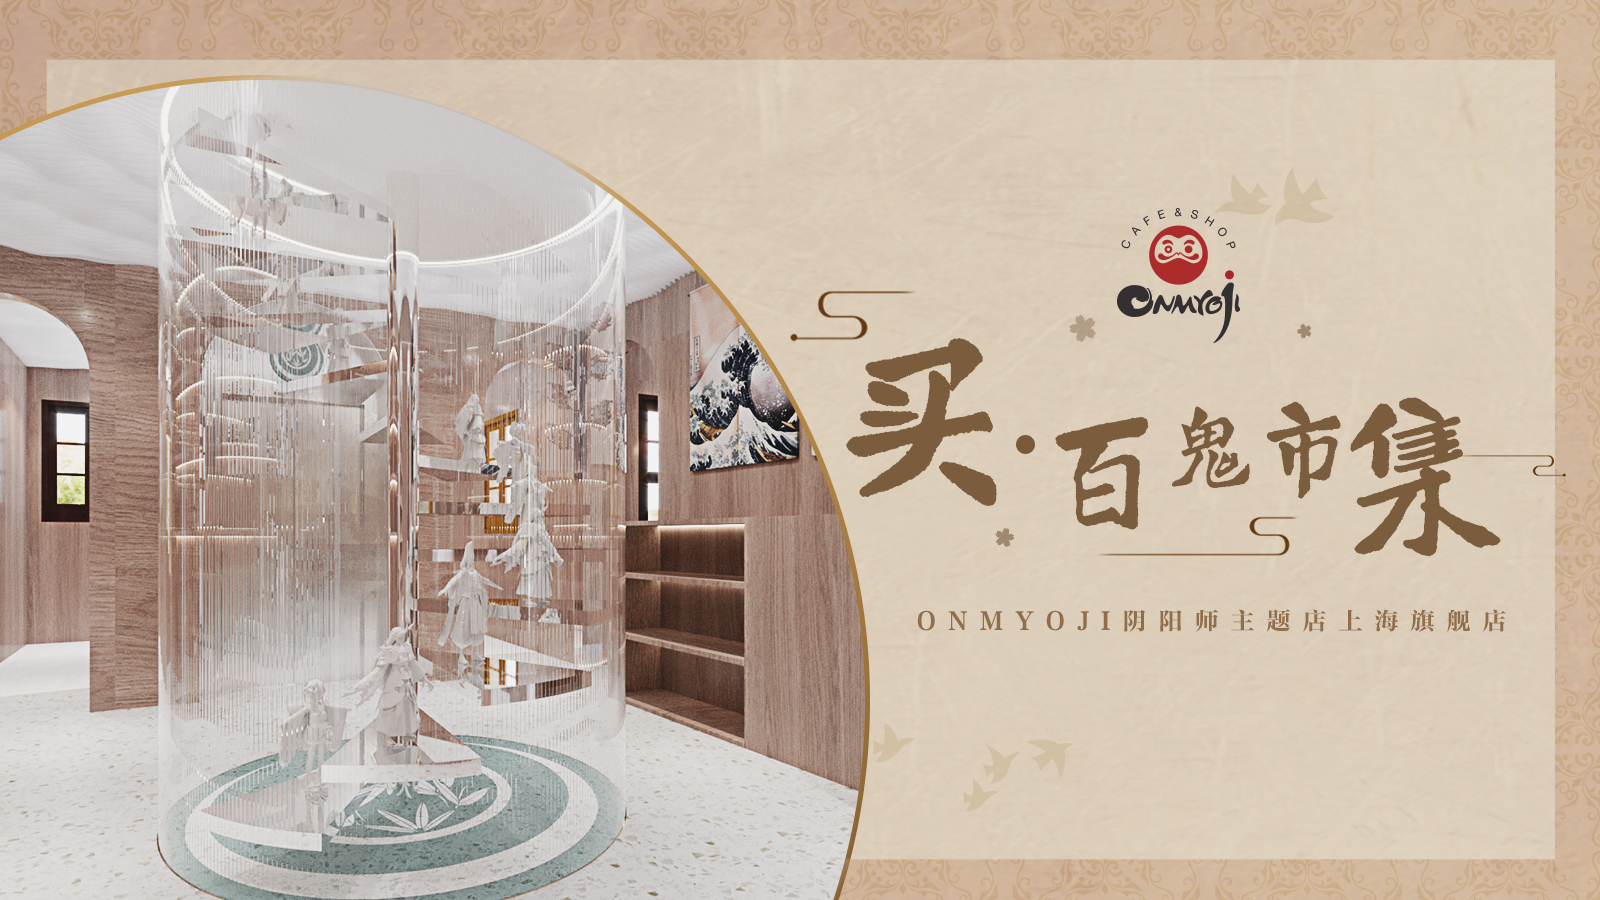 妖约魔都 Onmyoji阴阳师主题店即将在上海再开新店-游戏价值论